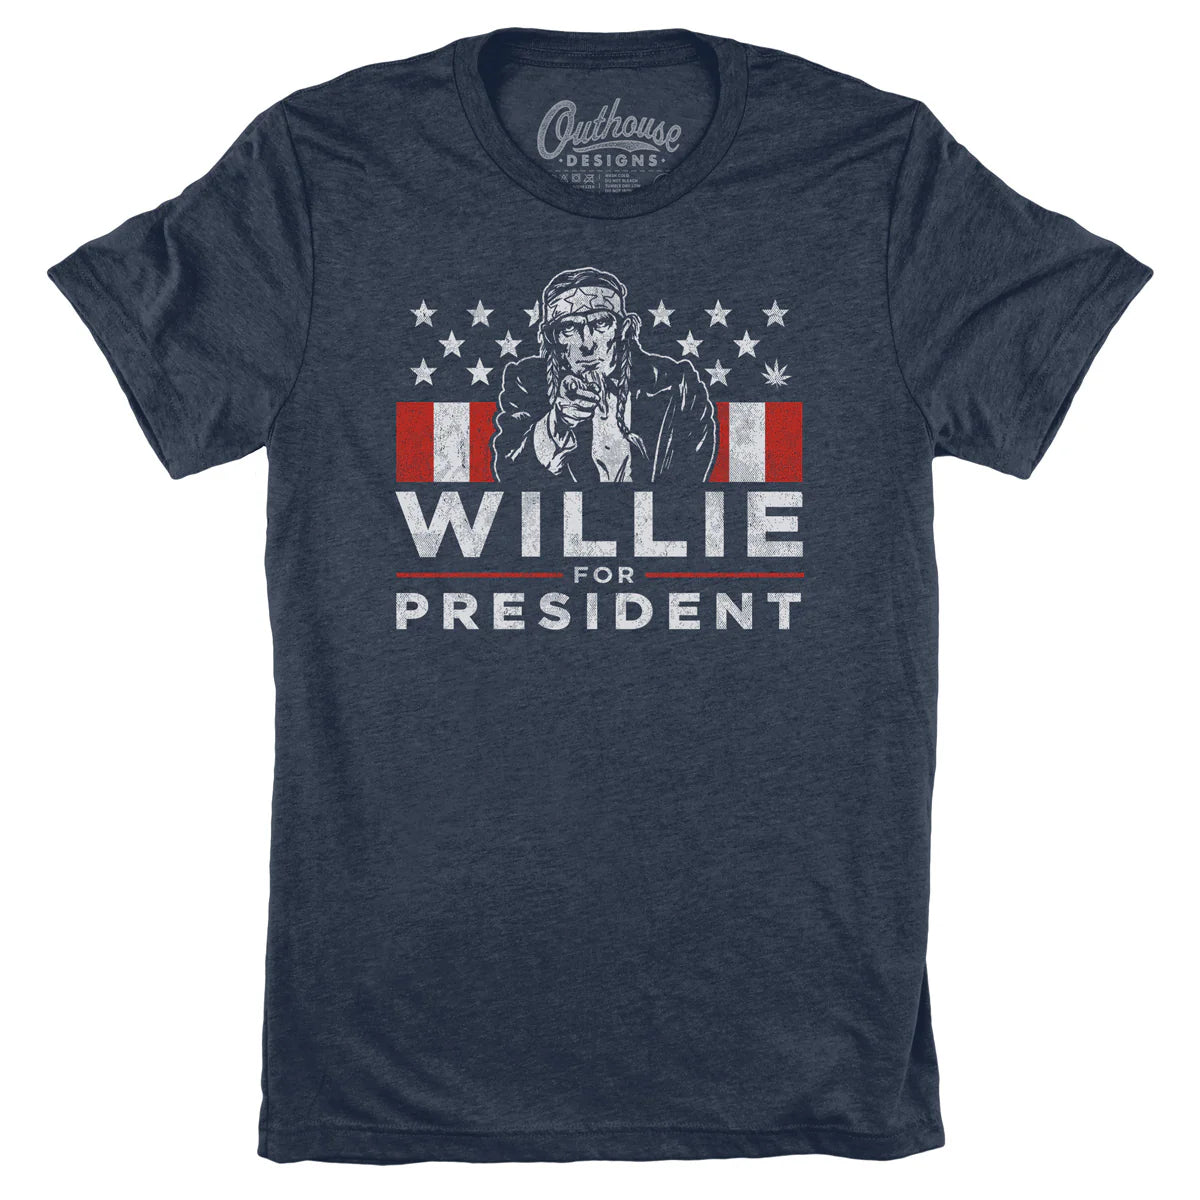 Willie For President Tee